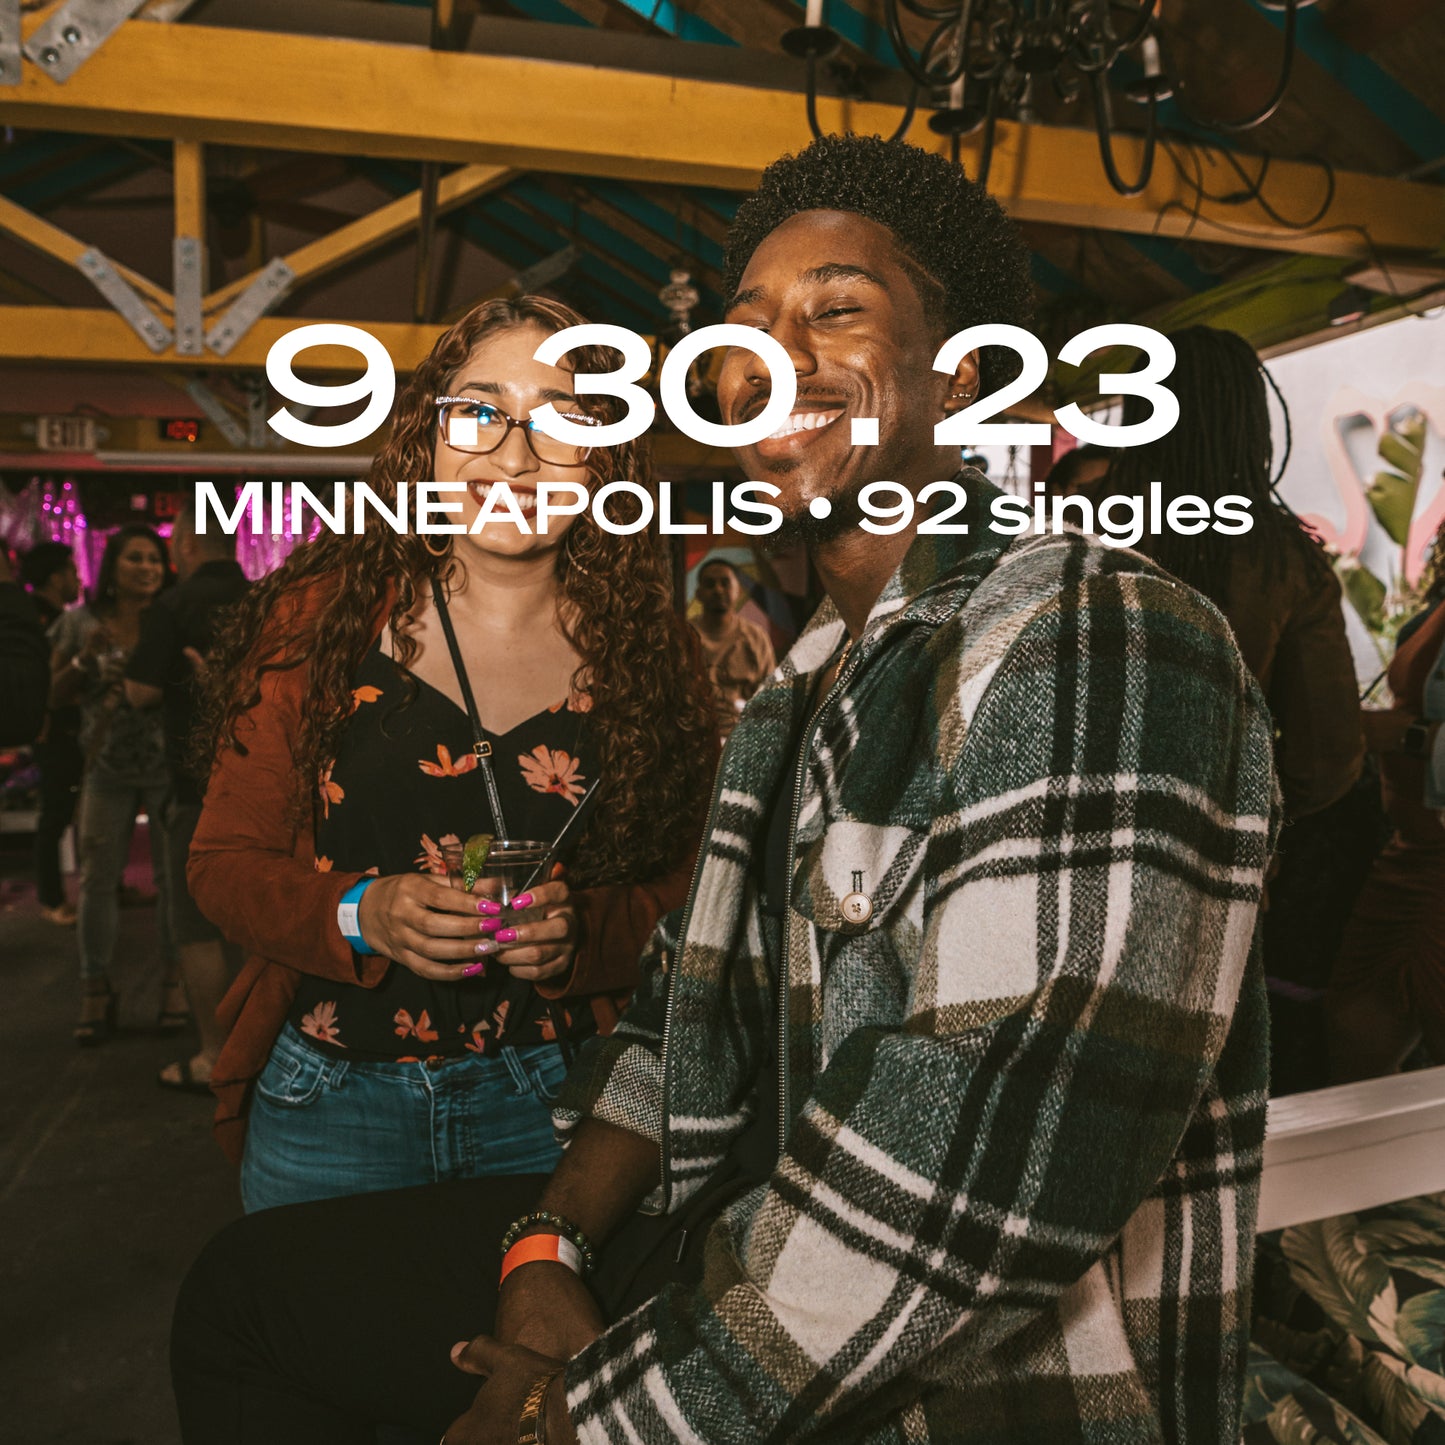 Minneapolis: Singles Happy Hour